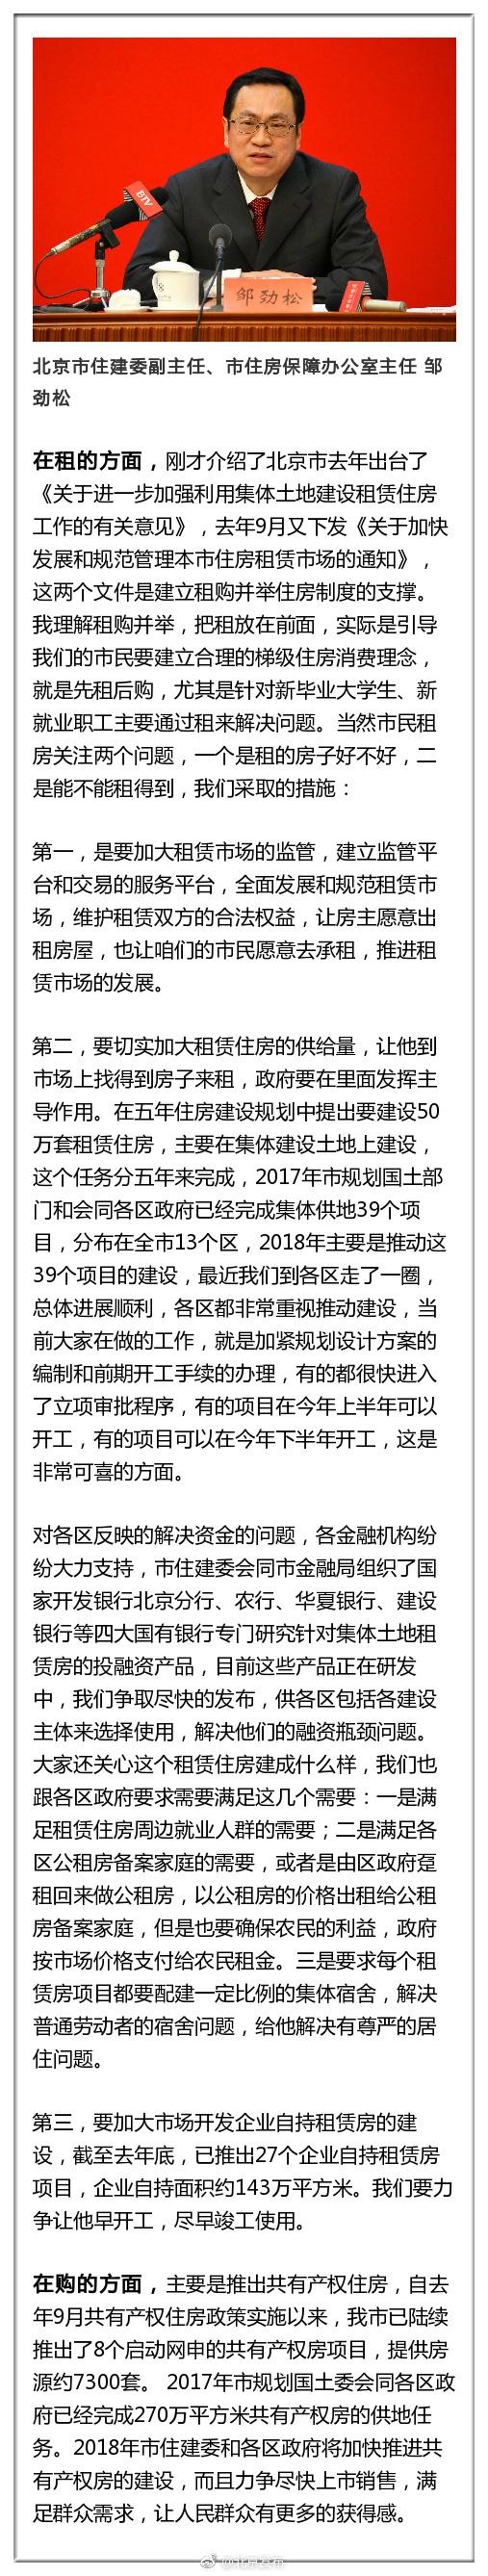 政府网站:北京如何保障住房供给量？住建委回应